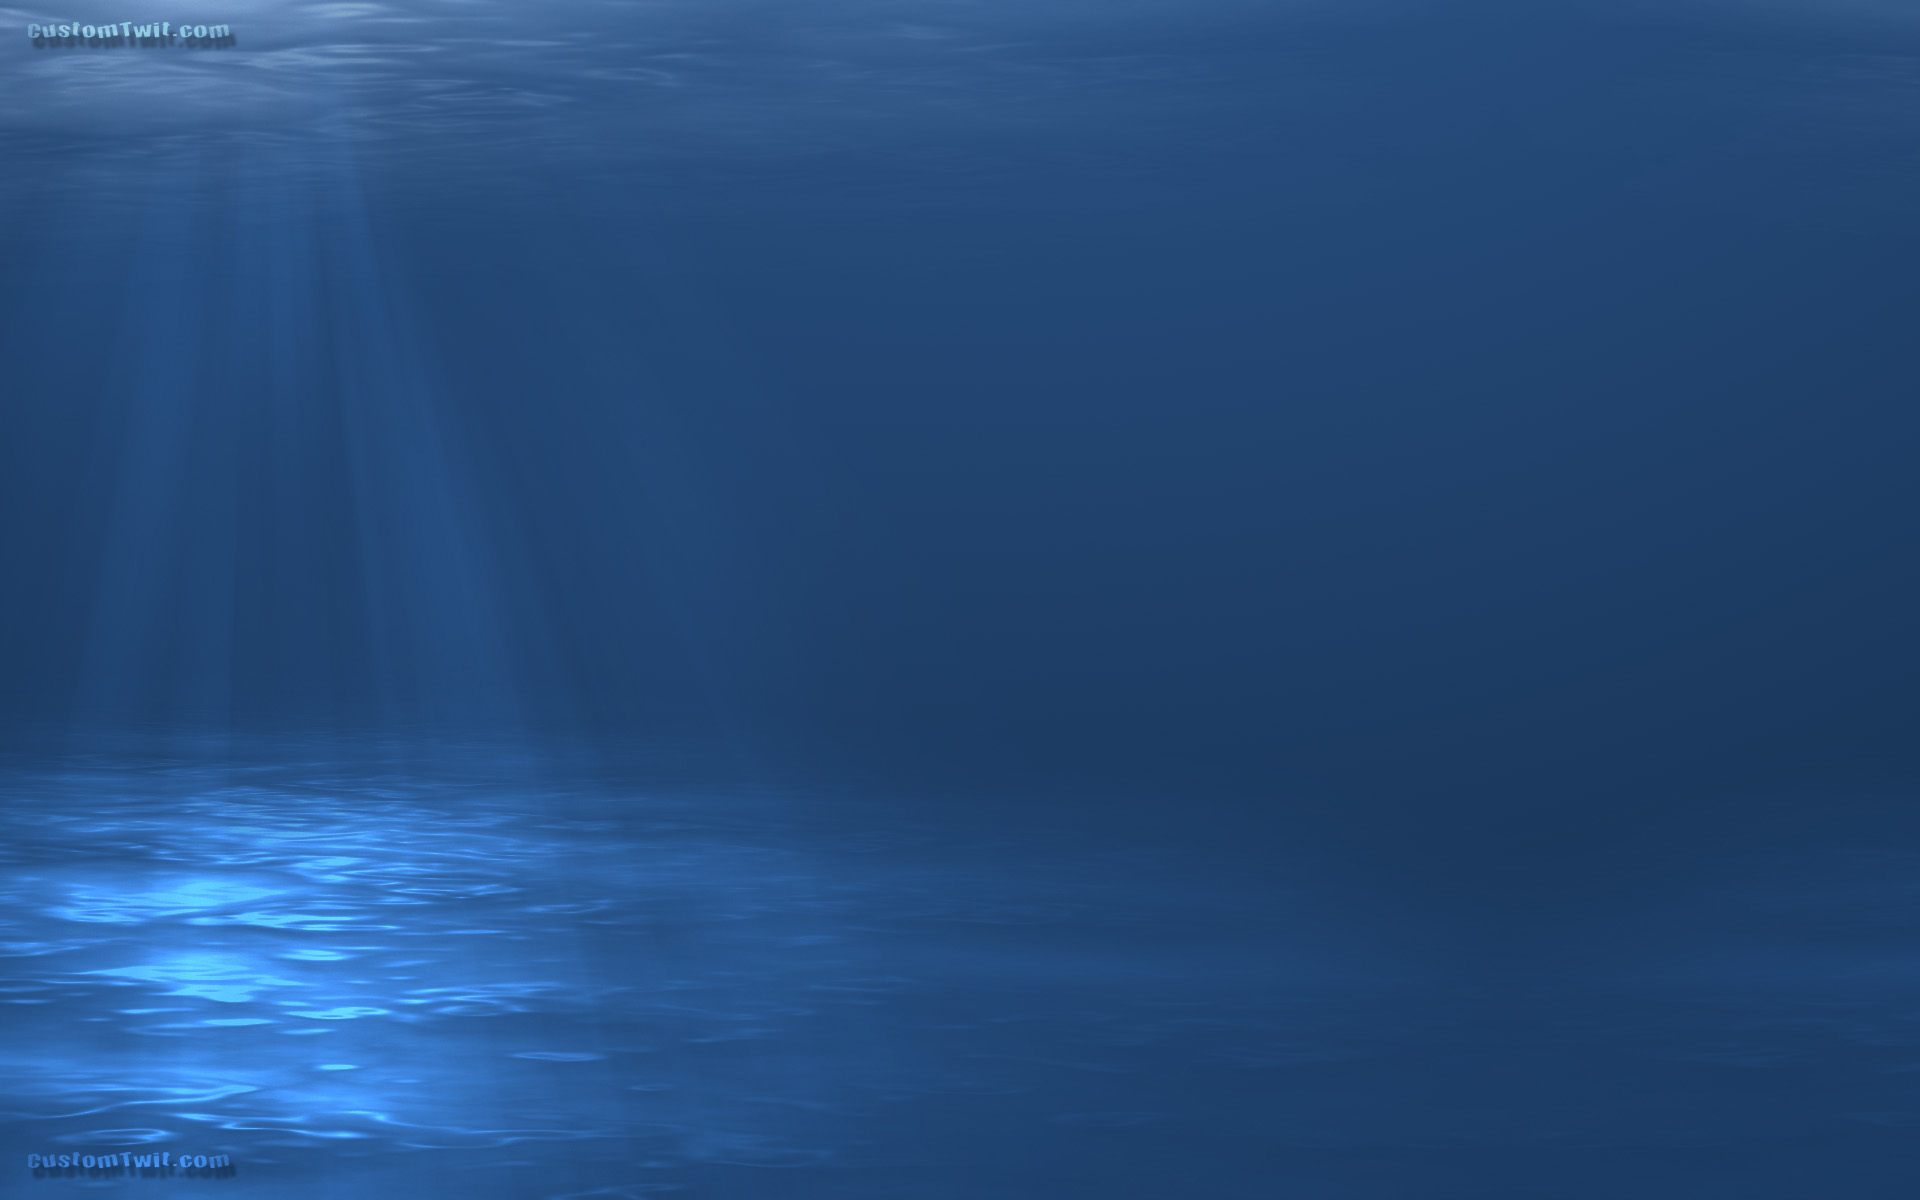 Nền nước xanh đại dương: Bạn từng nghe nói đến màu xanh đại dương cực kì thư thái và tạo nên bầu không khí trong lành sao? Đây chính là cảm giác mà hình ảnh nền nước xanh đại dương mang lại. Hãy cùng chiêm ngưỡng nhé!